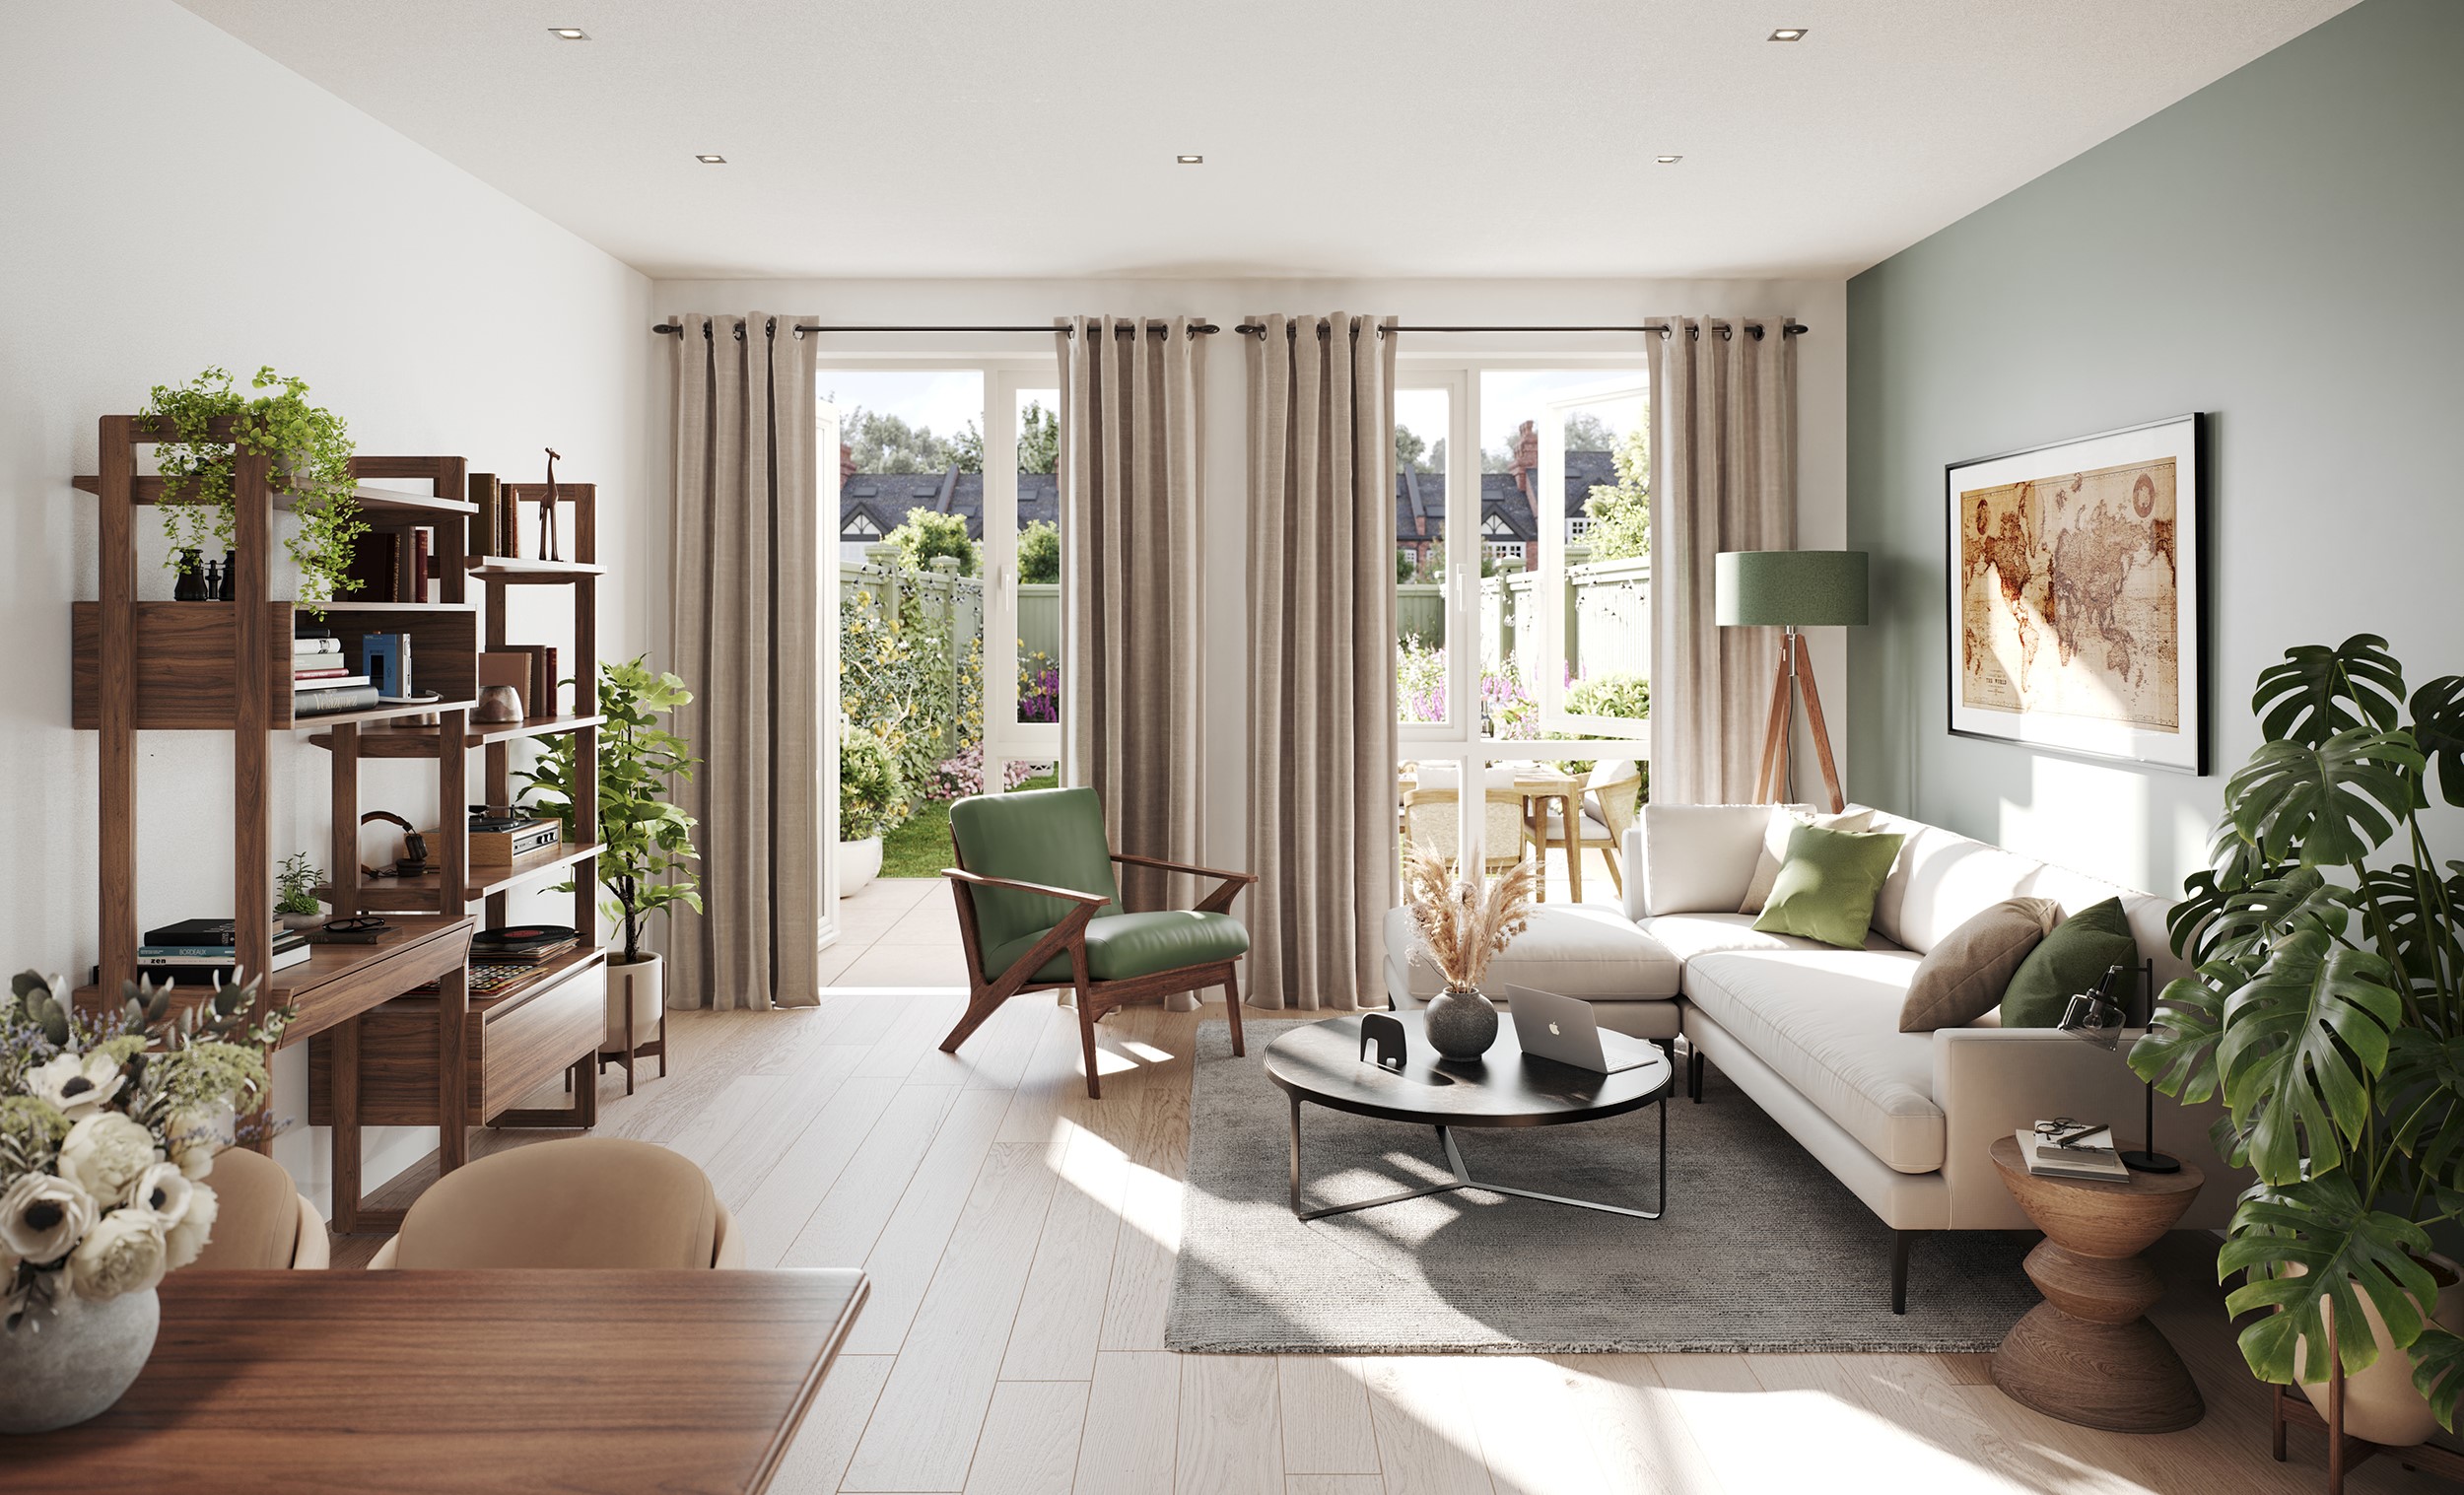 Interior design – Manor & Braganza